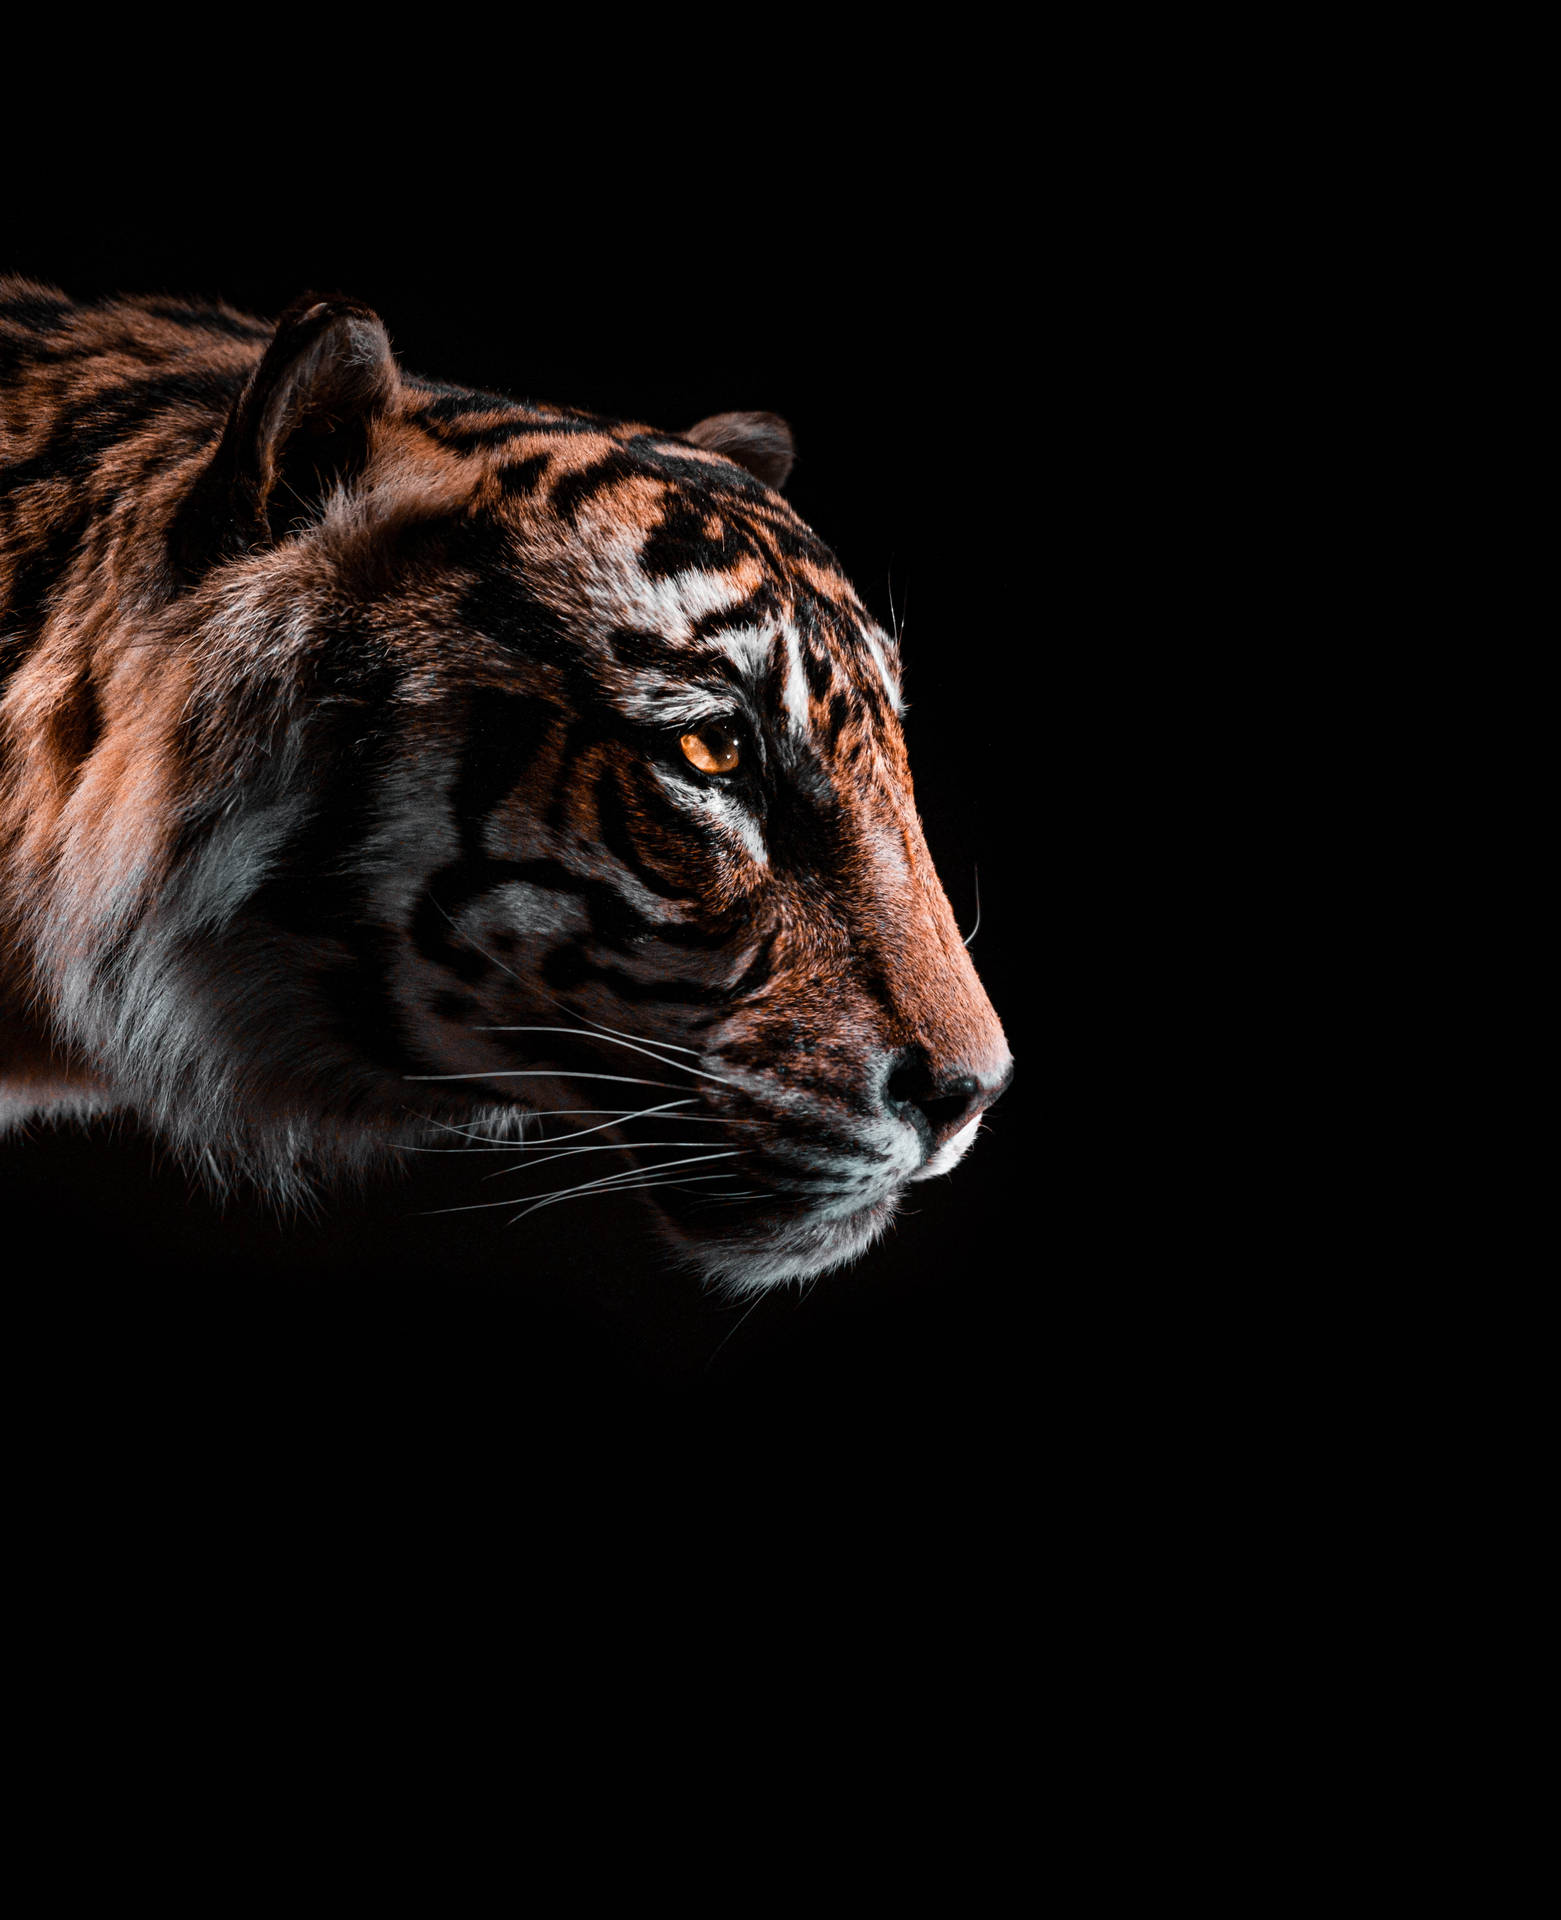 In The Dark Black Tiger